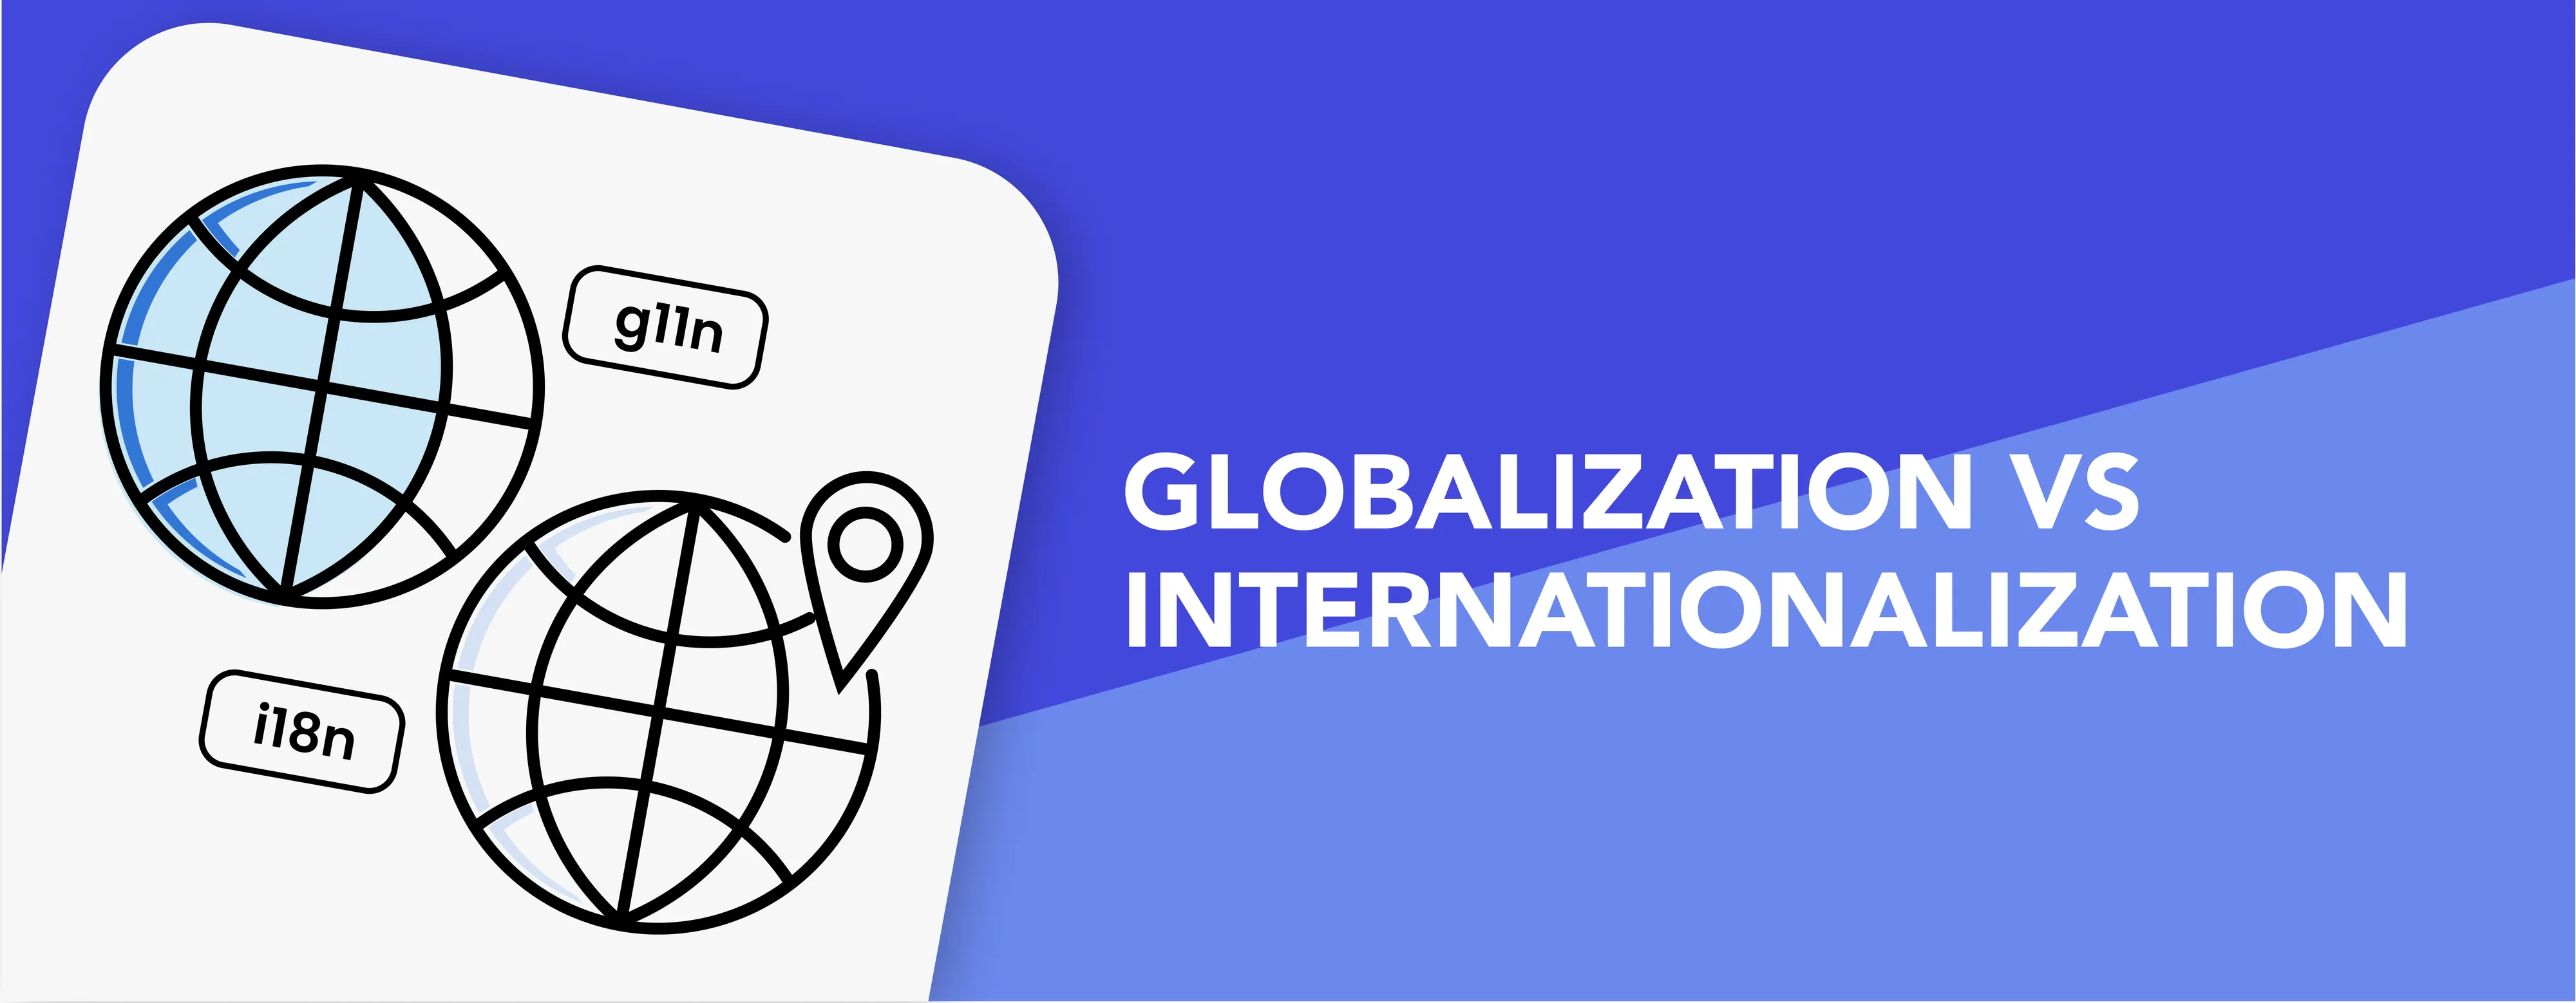 Globalization and internationalization 